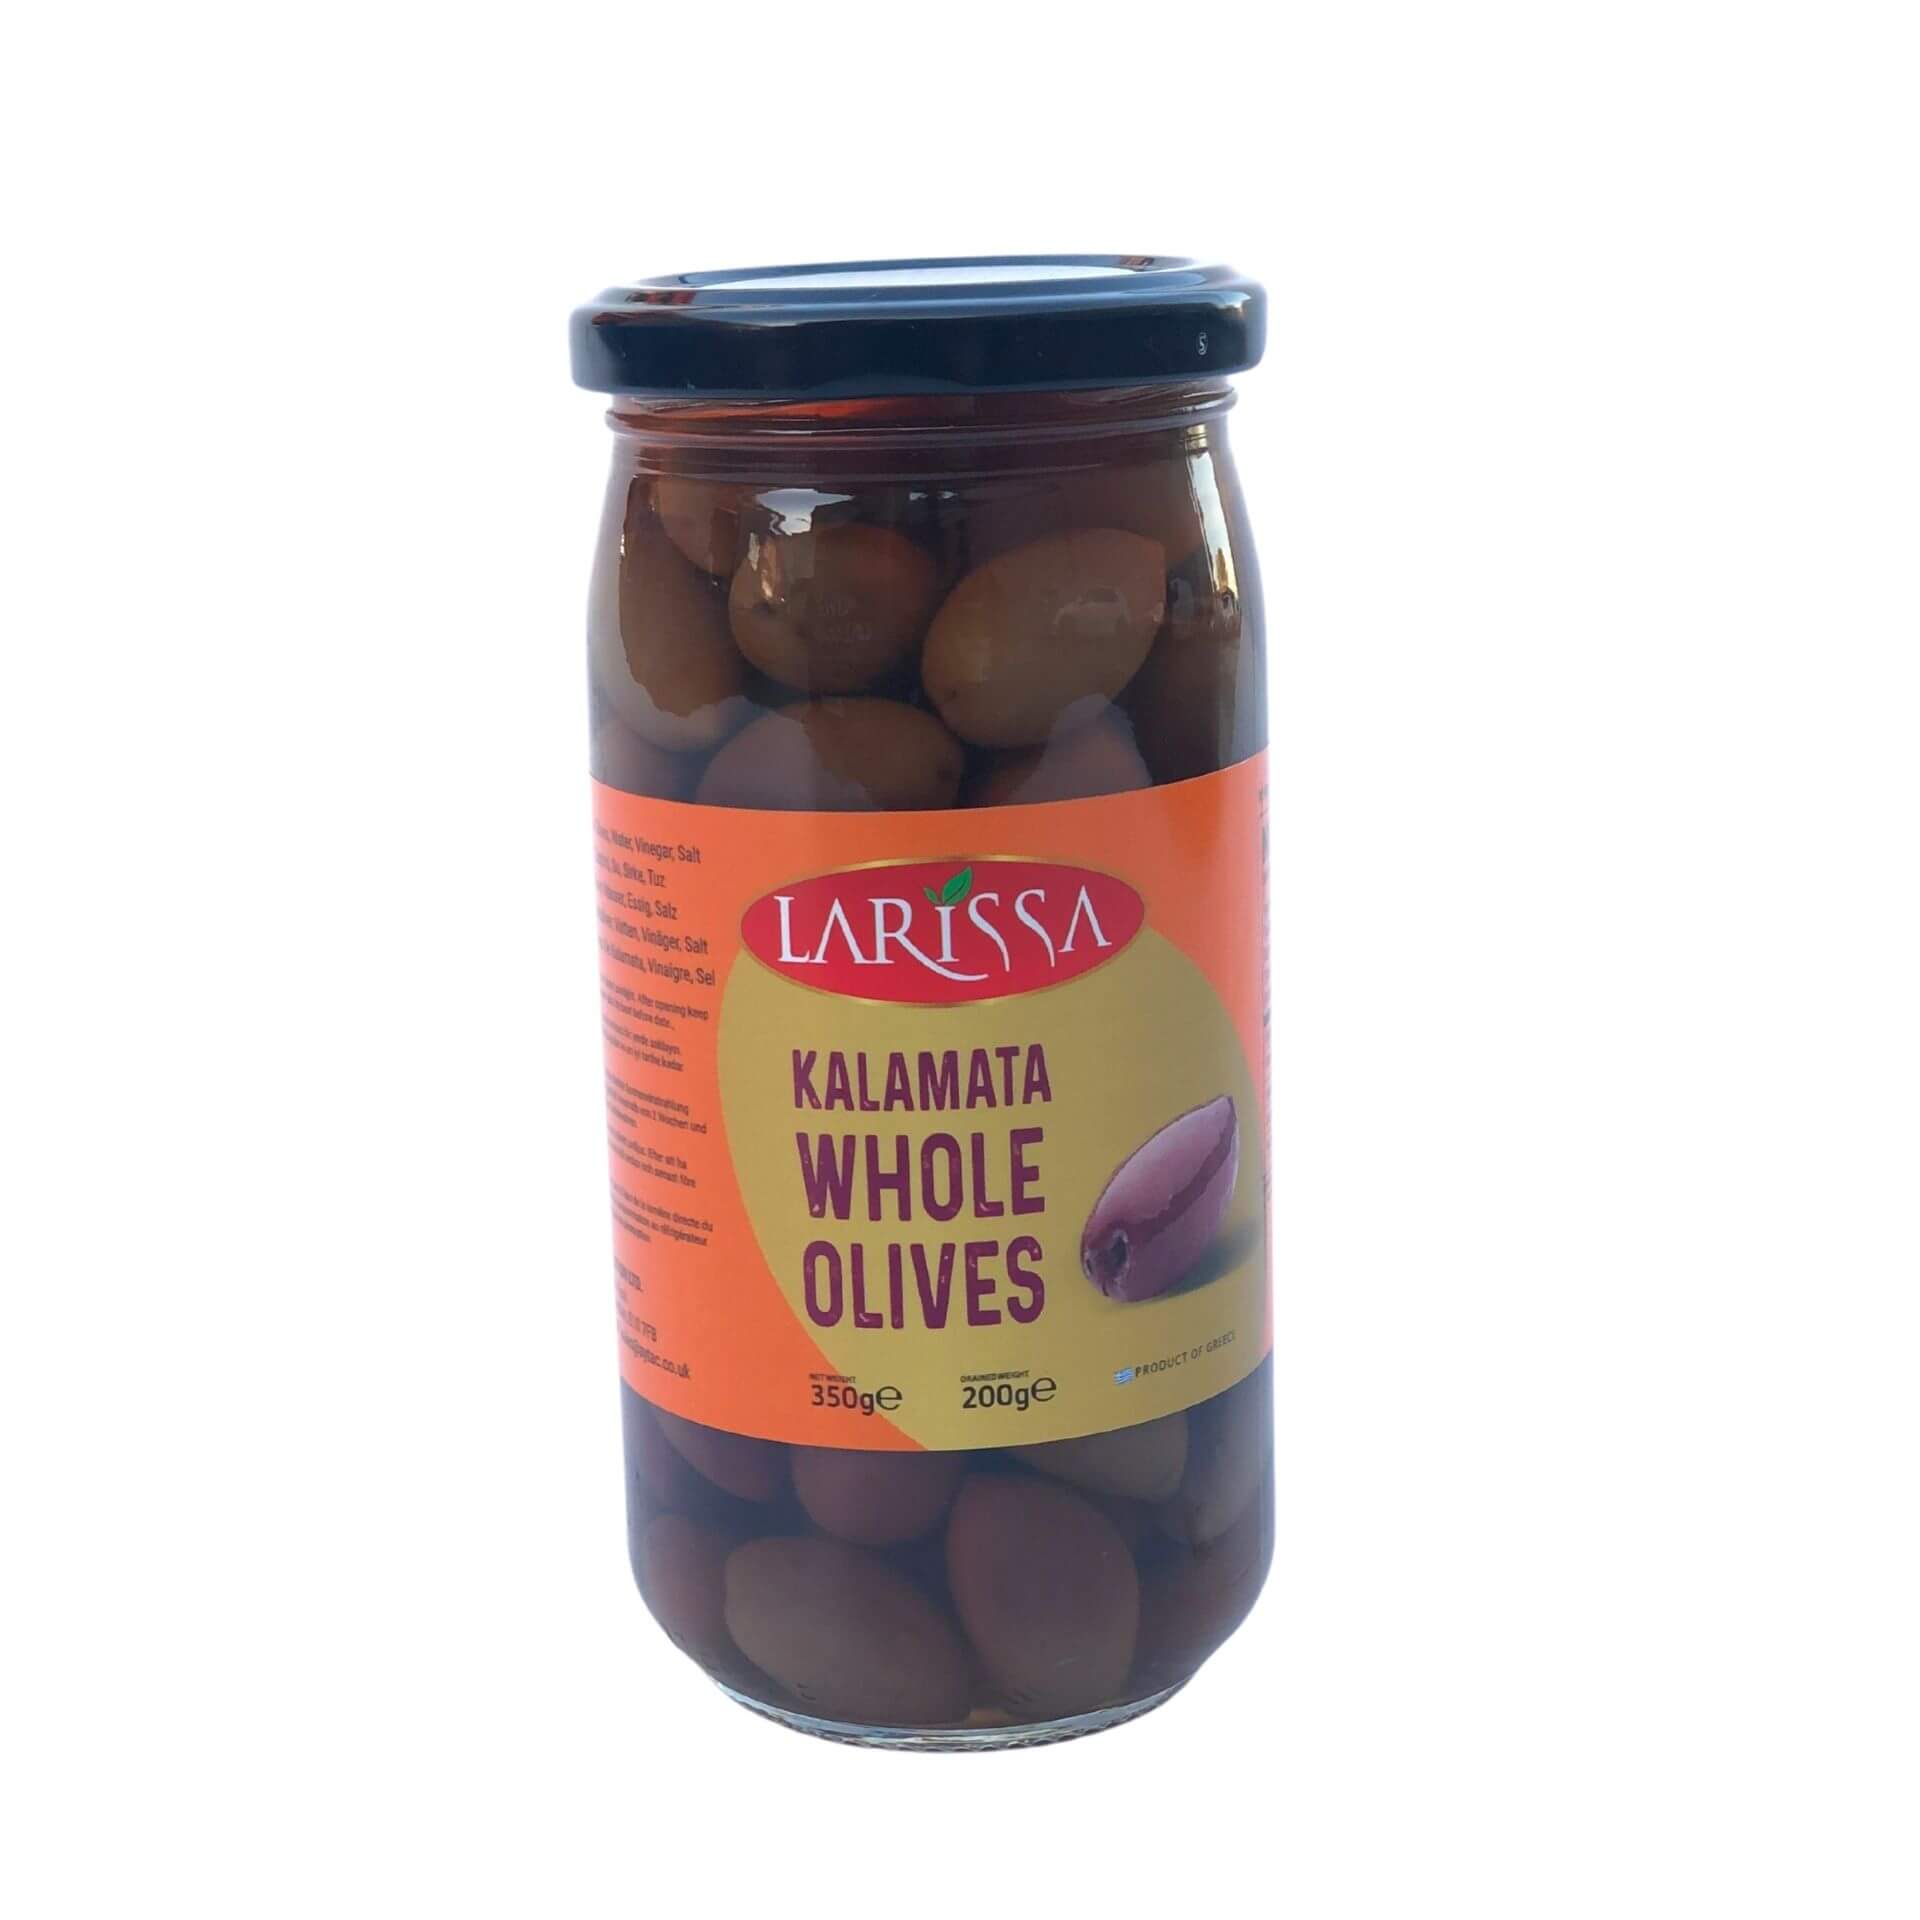 Larissa Kalamata Whole Olives (200G) - Aytac Foods